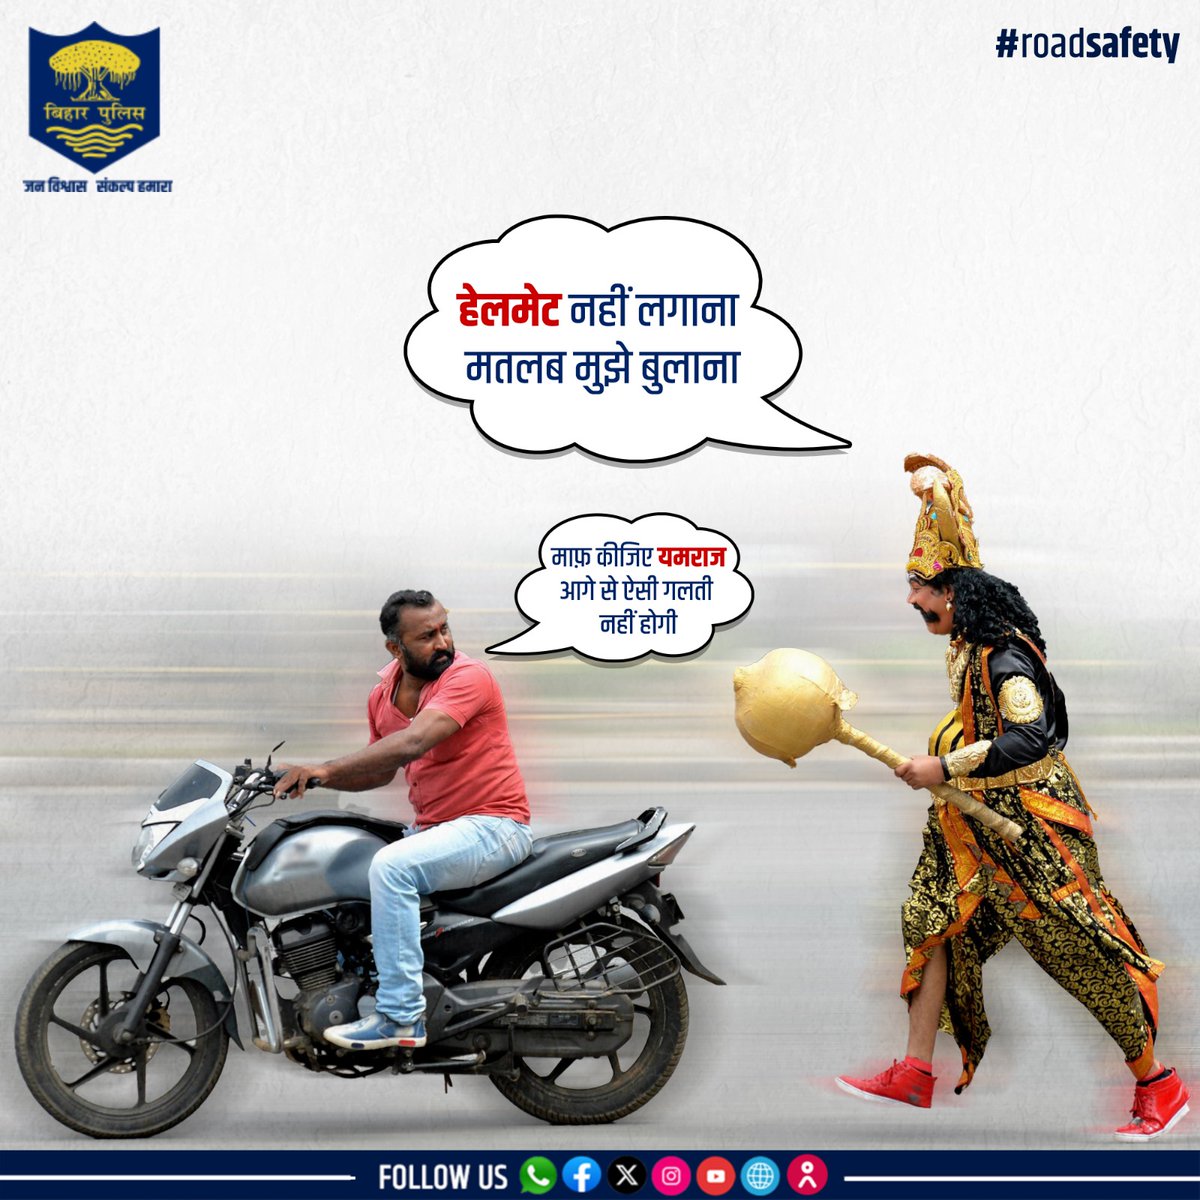 बाइक चलाते समय हेलमेट का प्रयोग करें। बिना हेलमेट के गाड़ी चलाना जानलेवा साबित हो सकता है। . . #BiharPolice #Bihar #roadsafety #wearhelmet